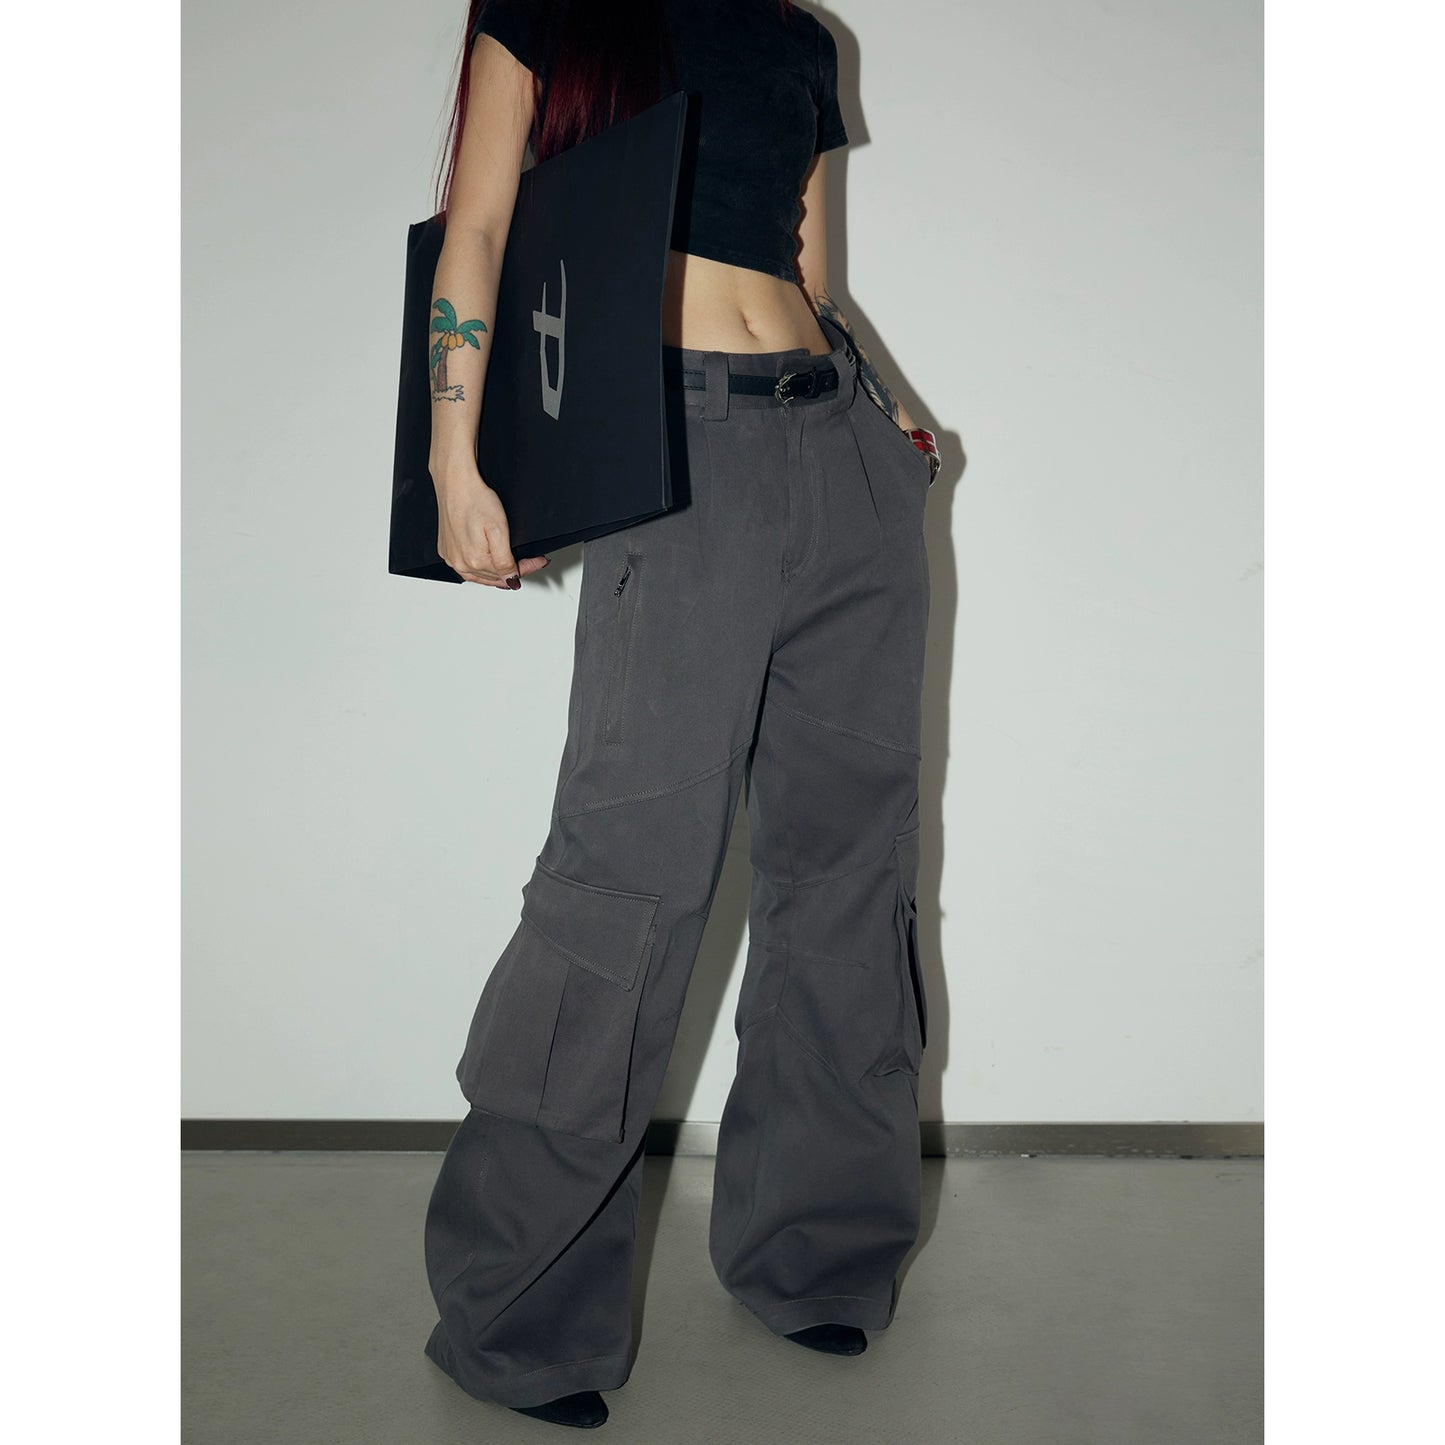 Multi Pocket - классические штаны для рабочей одежды с широкими ногами